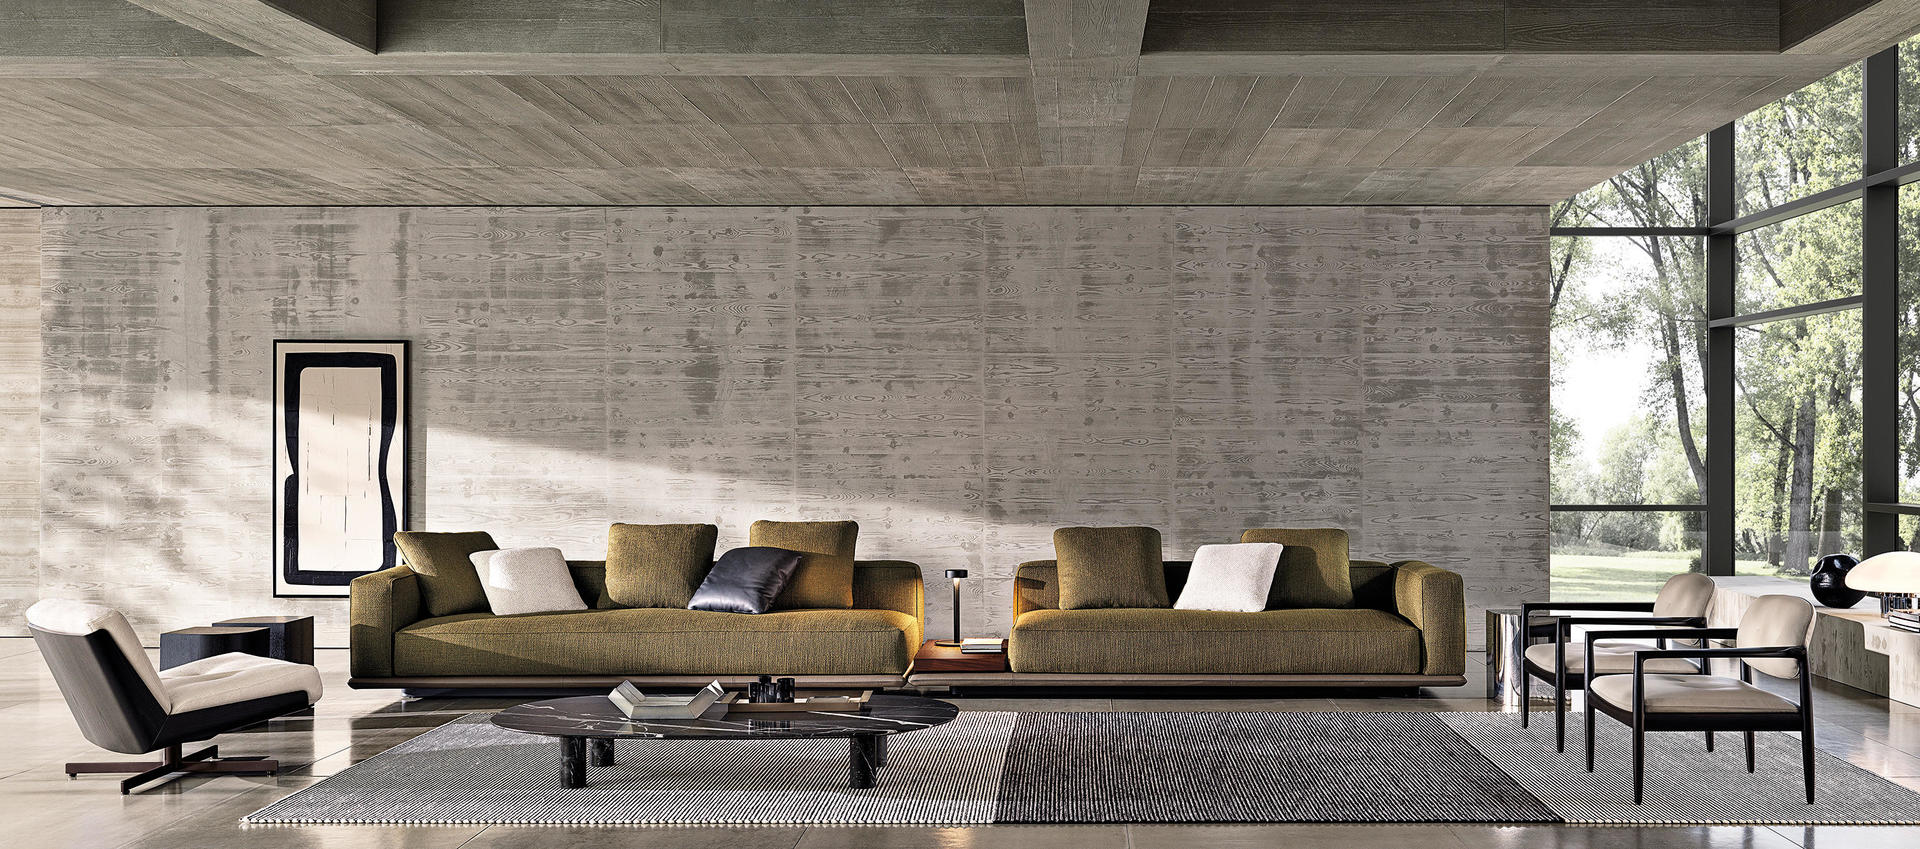 HORA Barneveld Minotti Horizonte bank modulaire sofa design meubelen designmeubelen 5.jpg